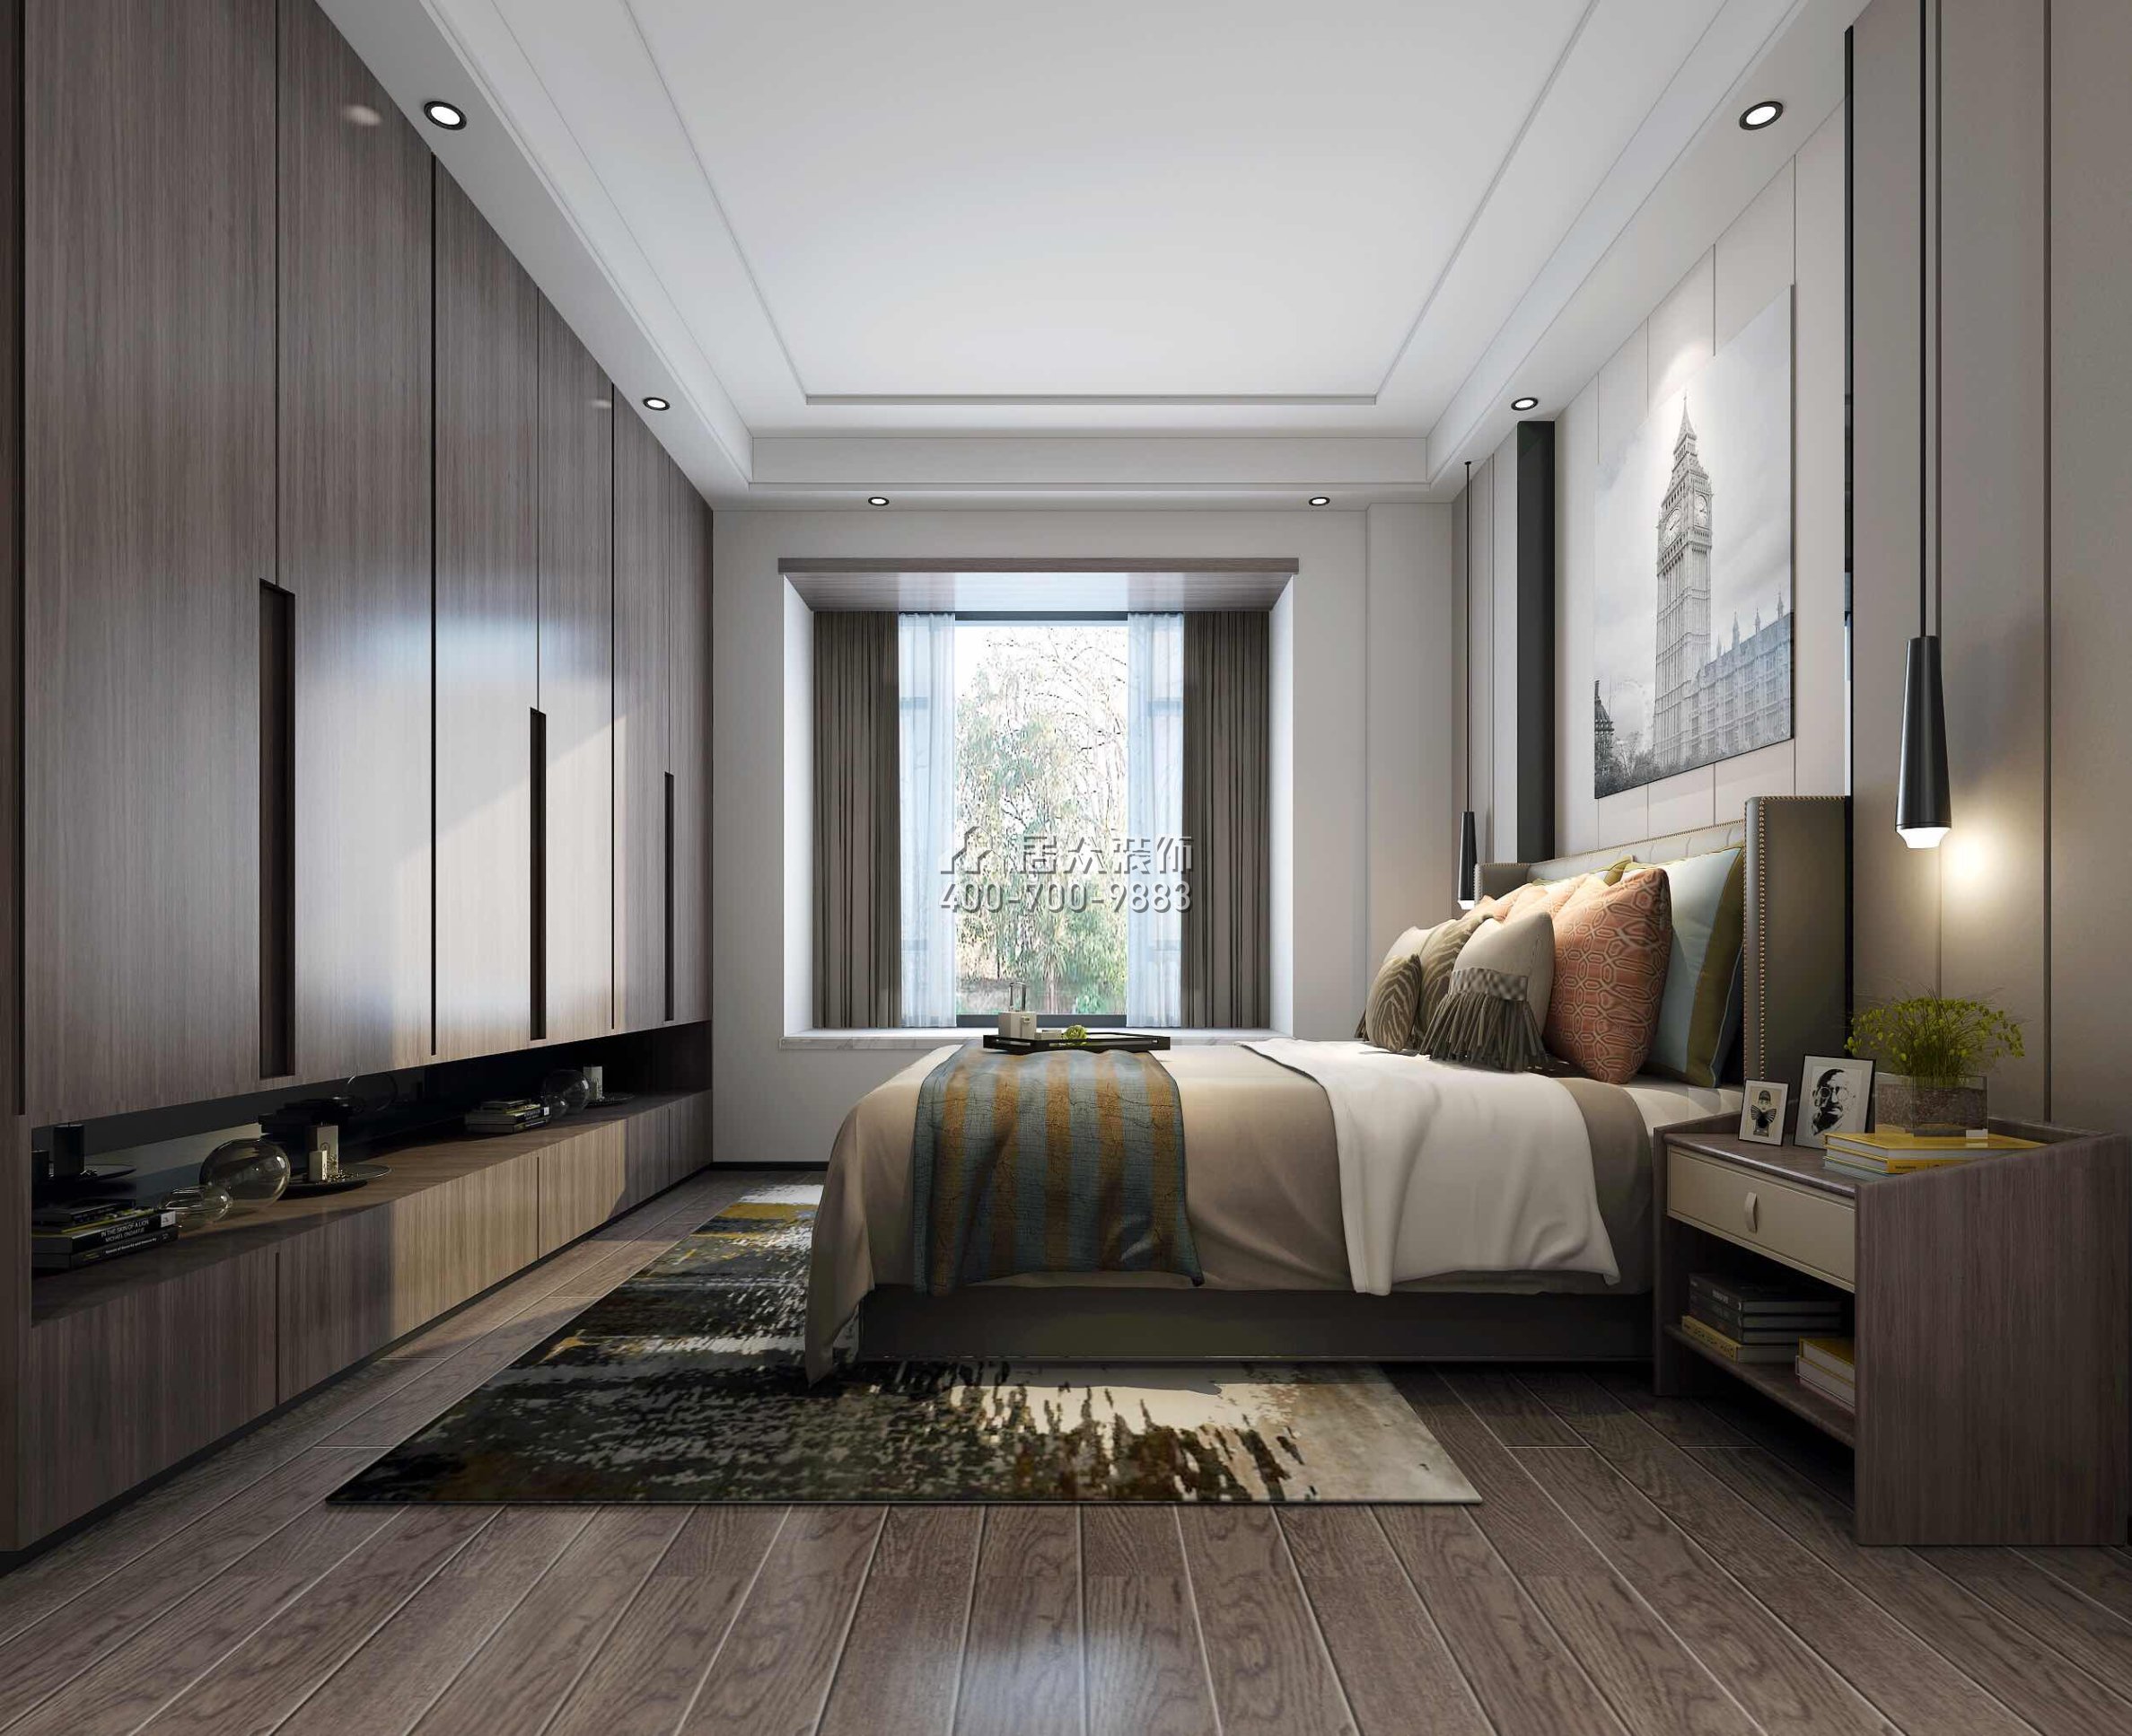 海逸豪庭321平方米現代簡約風格別墅戶型臥室裝修效果圖